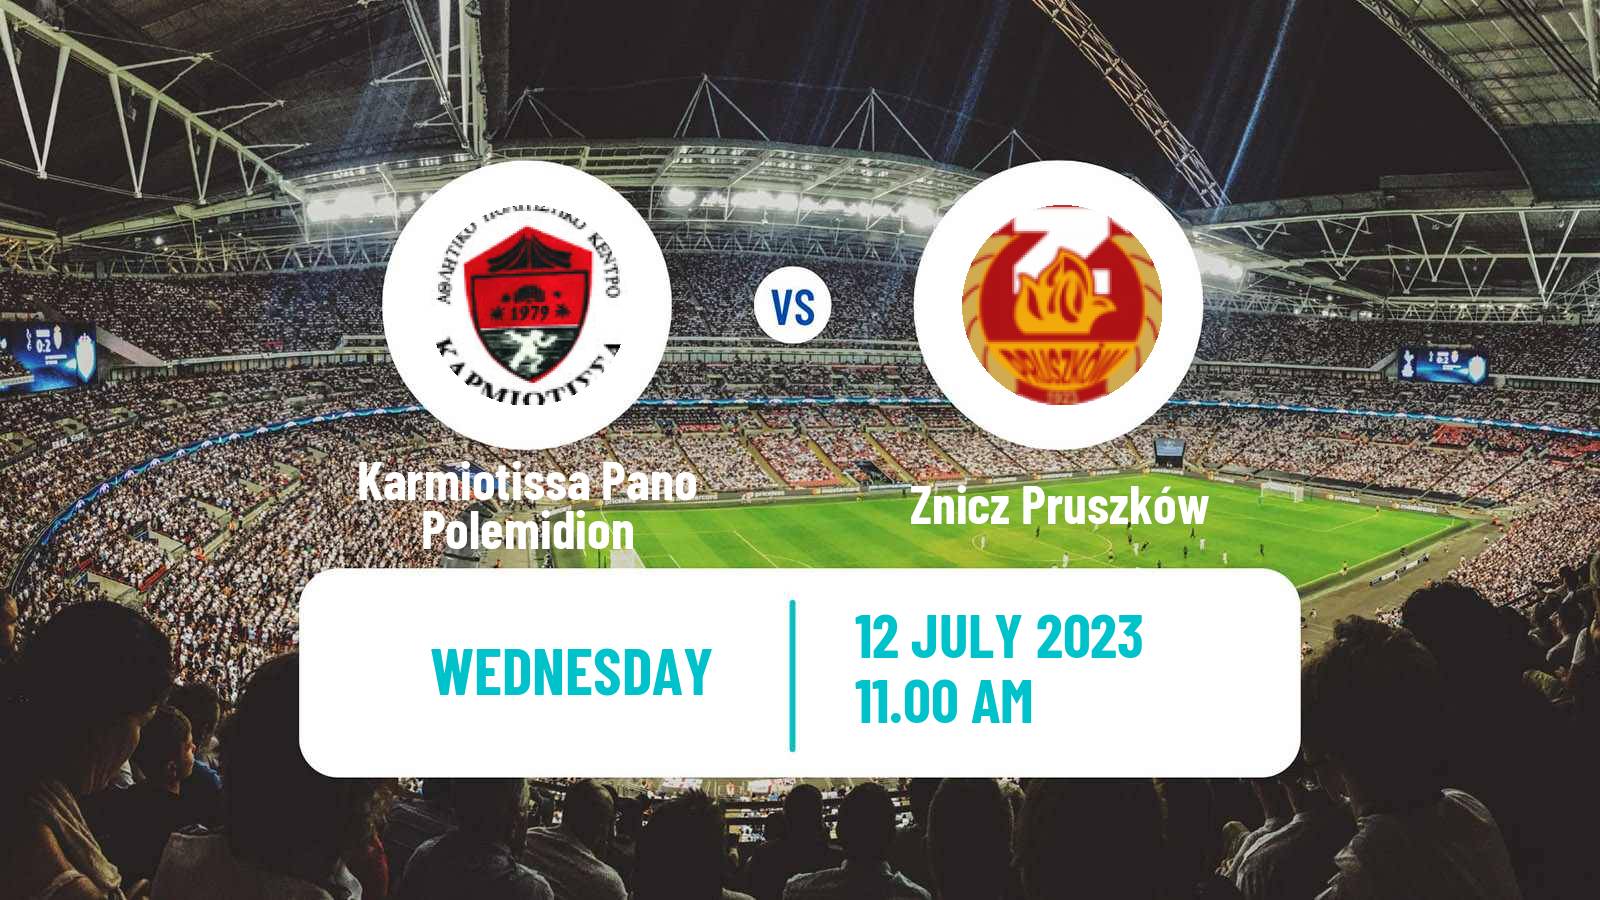 Soccer Club Friendly Karmiotissa Pano Polemidion - Znicz Pruszków